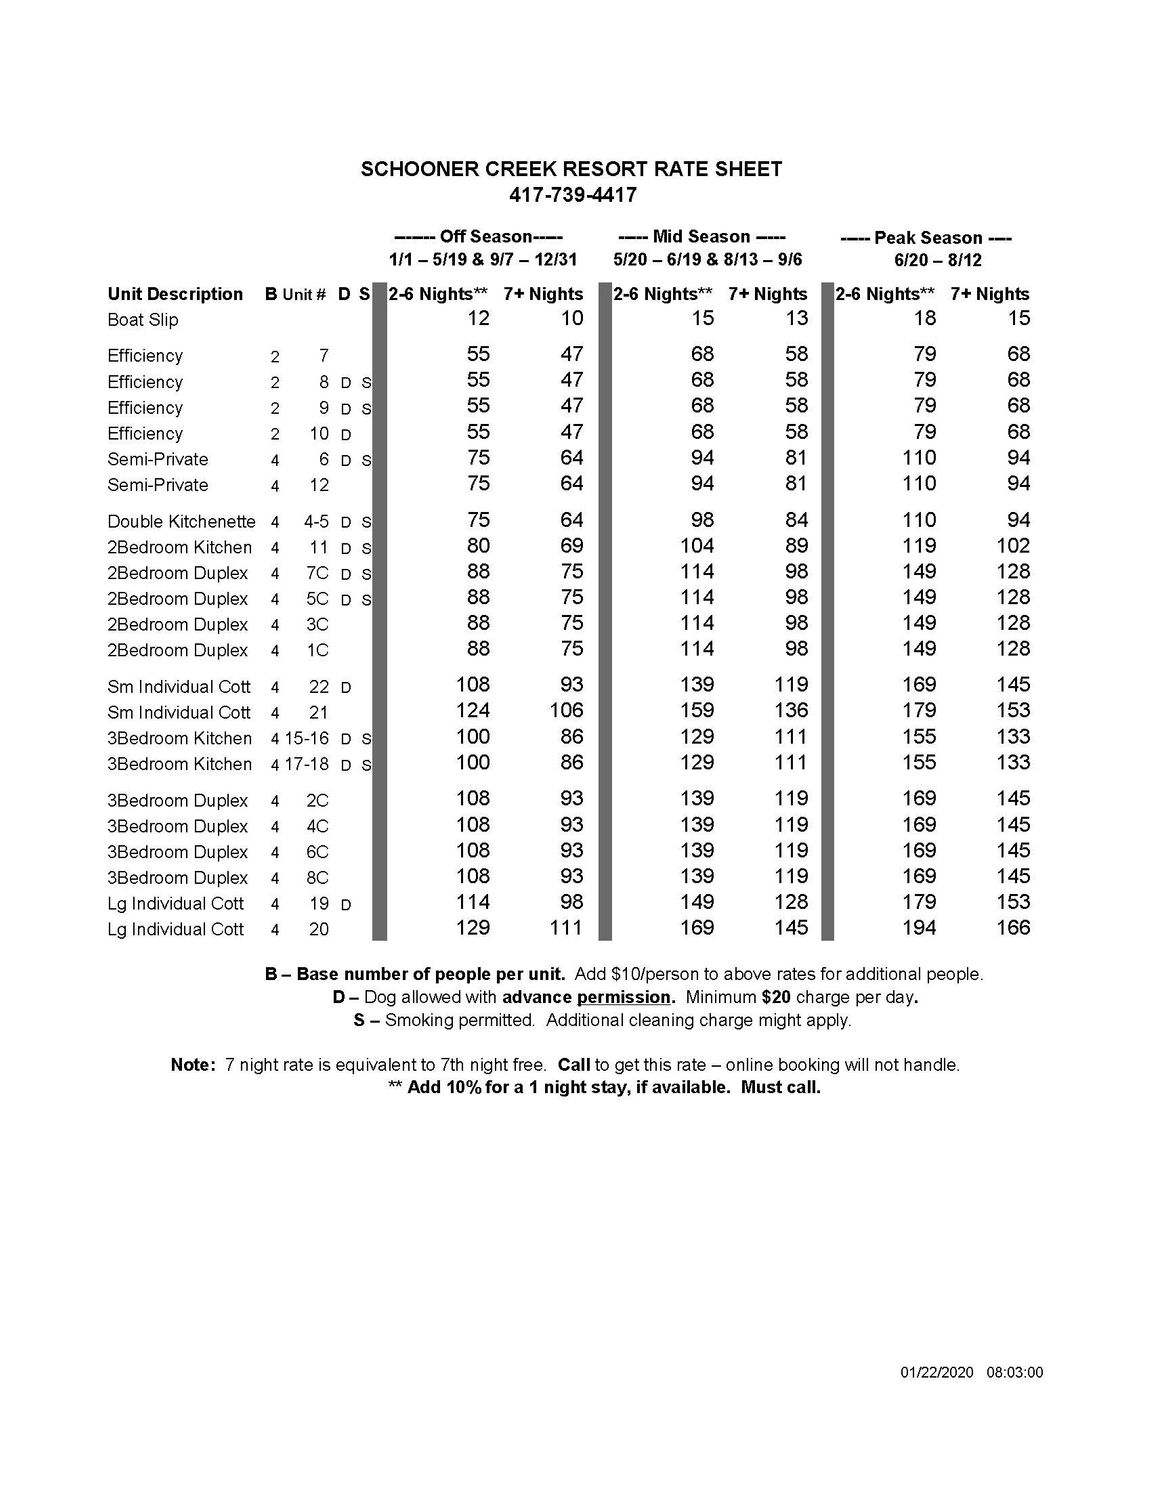 Schooner Creek Resort Rate Sheet